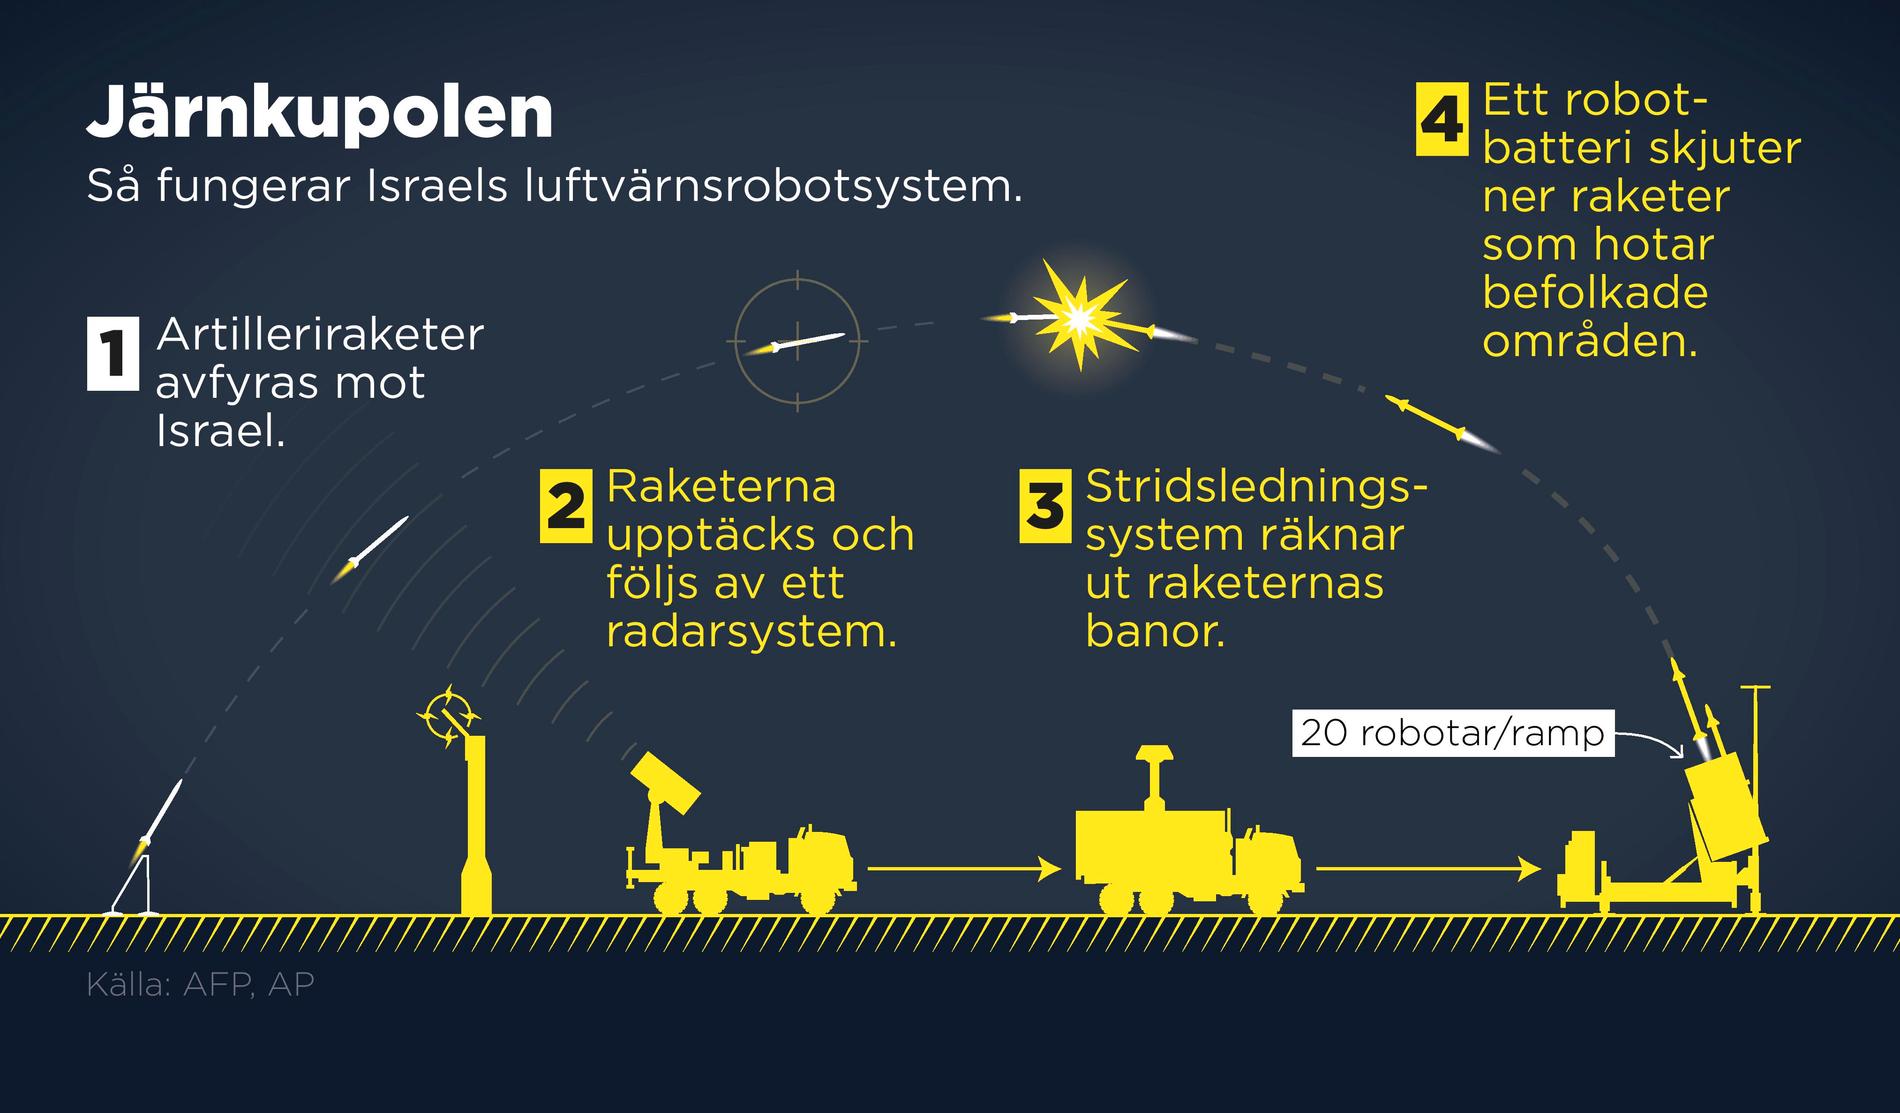 Så här fungerar den så kallade Järnkupolen, när projektiler avfyras mot Israel.